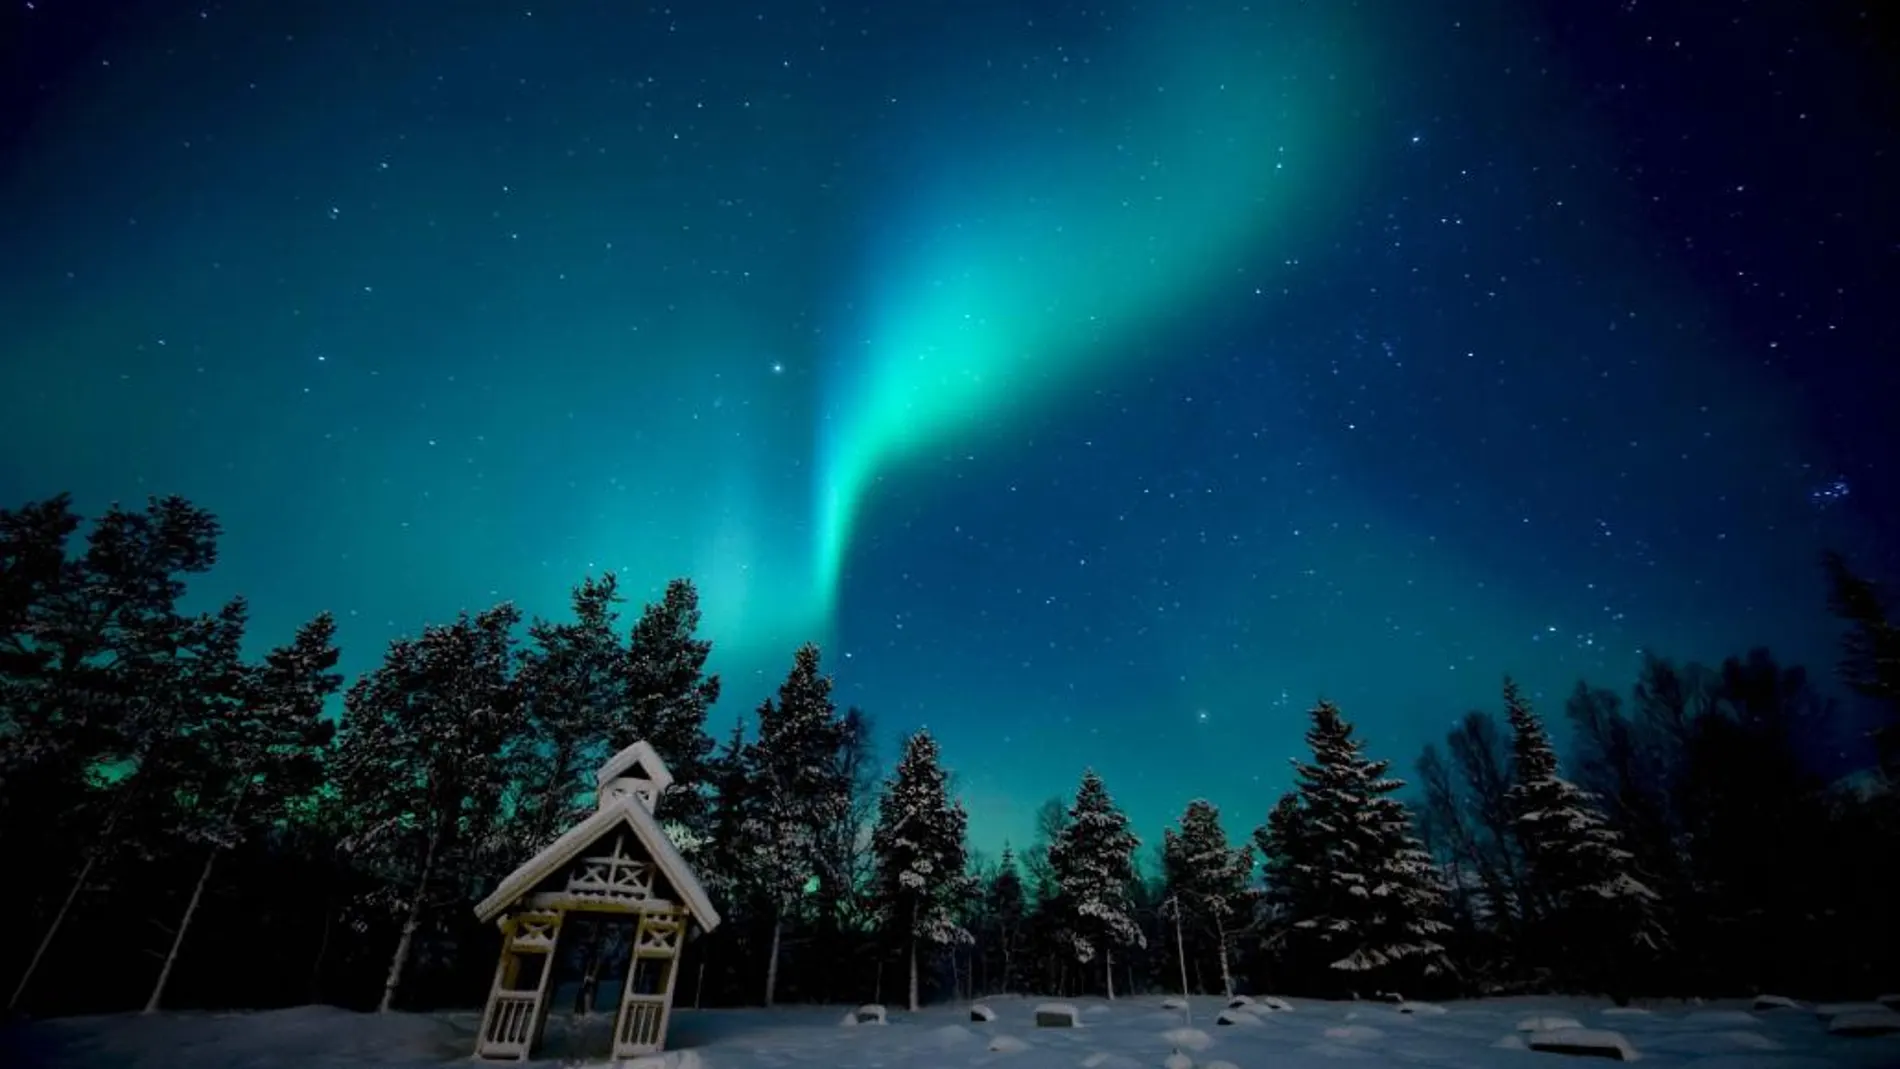 La aurora boreal es un fenómeno relacionado con el campo magnético, ya que es producido cuando partículas de masa solar cargadas eléctricamente impactan con la atmósfera de la Tierra y su flujo es conducido por el campo magnético que envuelve el planeta.